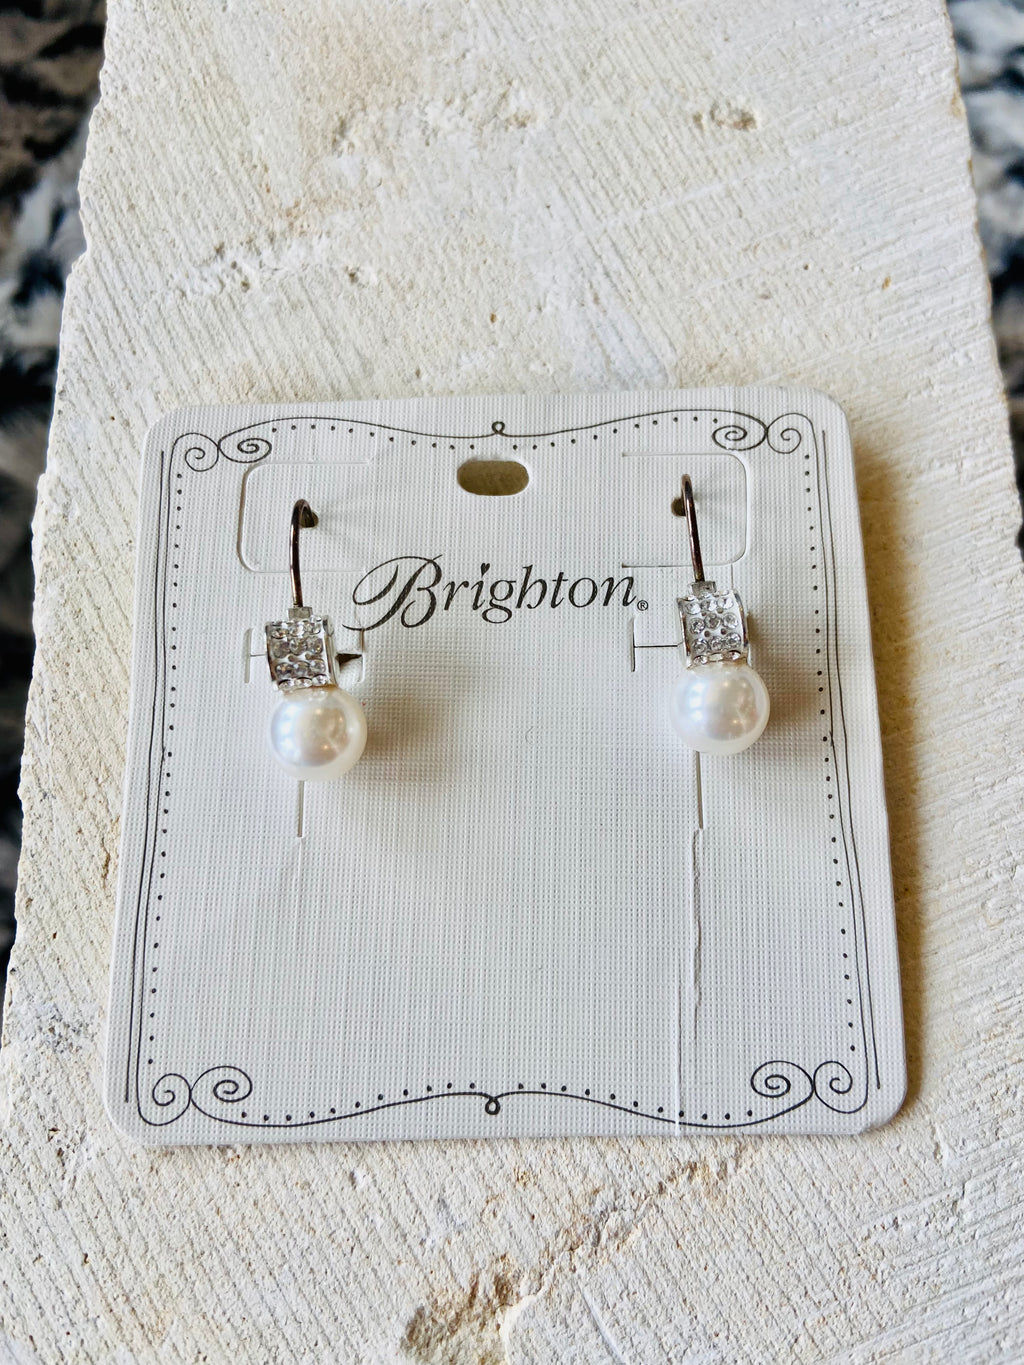 Meridian Petite Pearl Leverback Earrings